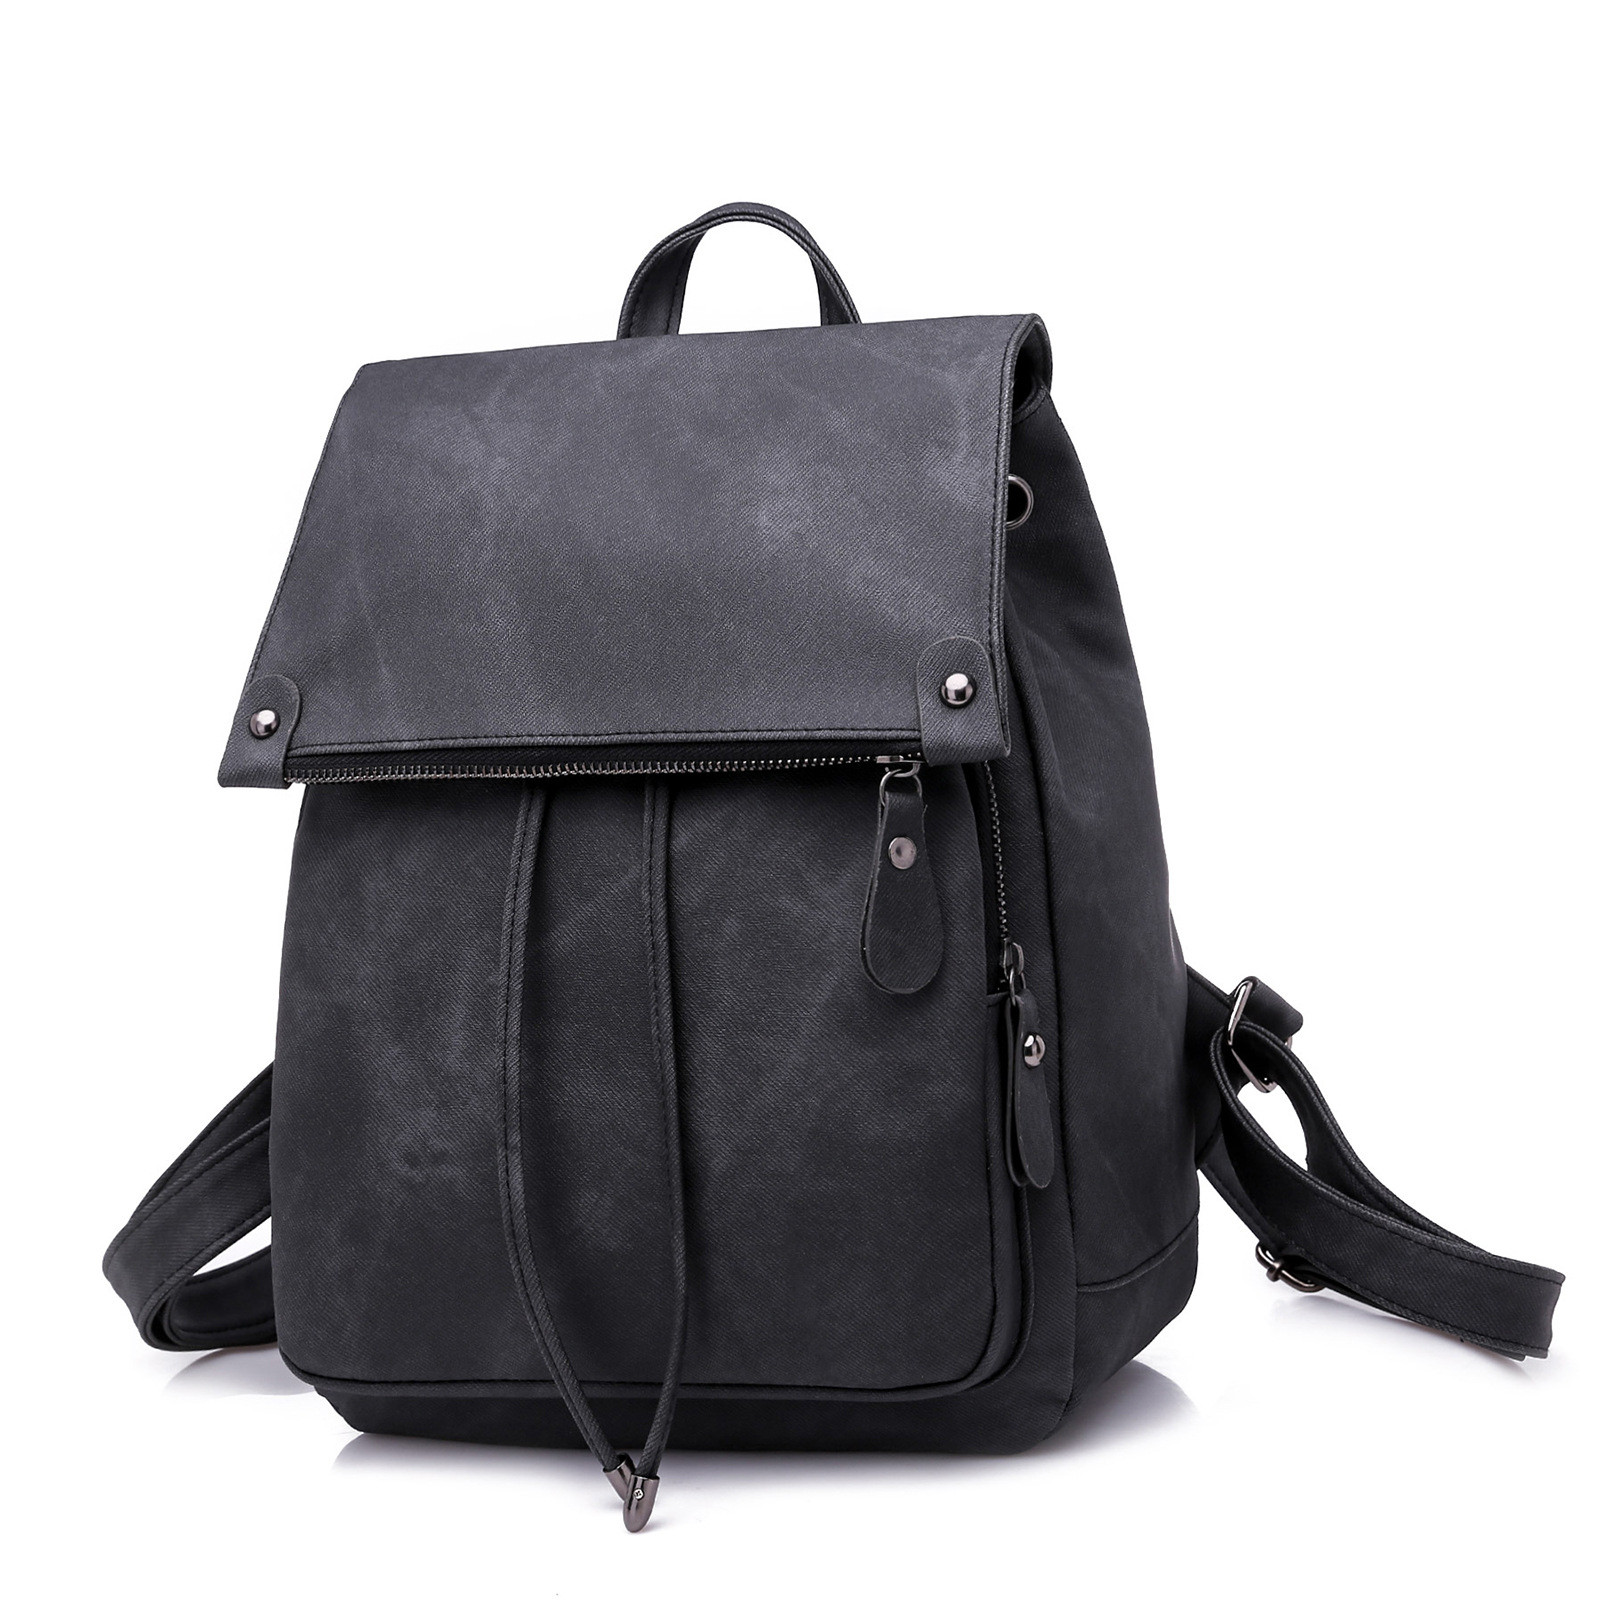 Рюкзак женский M2224-26 черный, 30х25х16 см